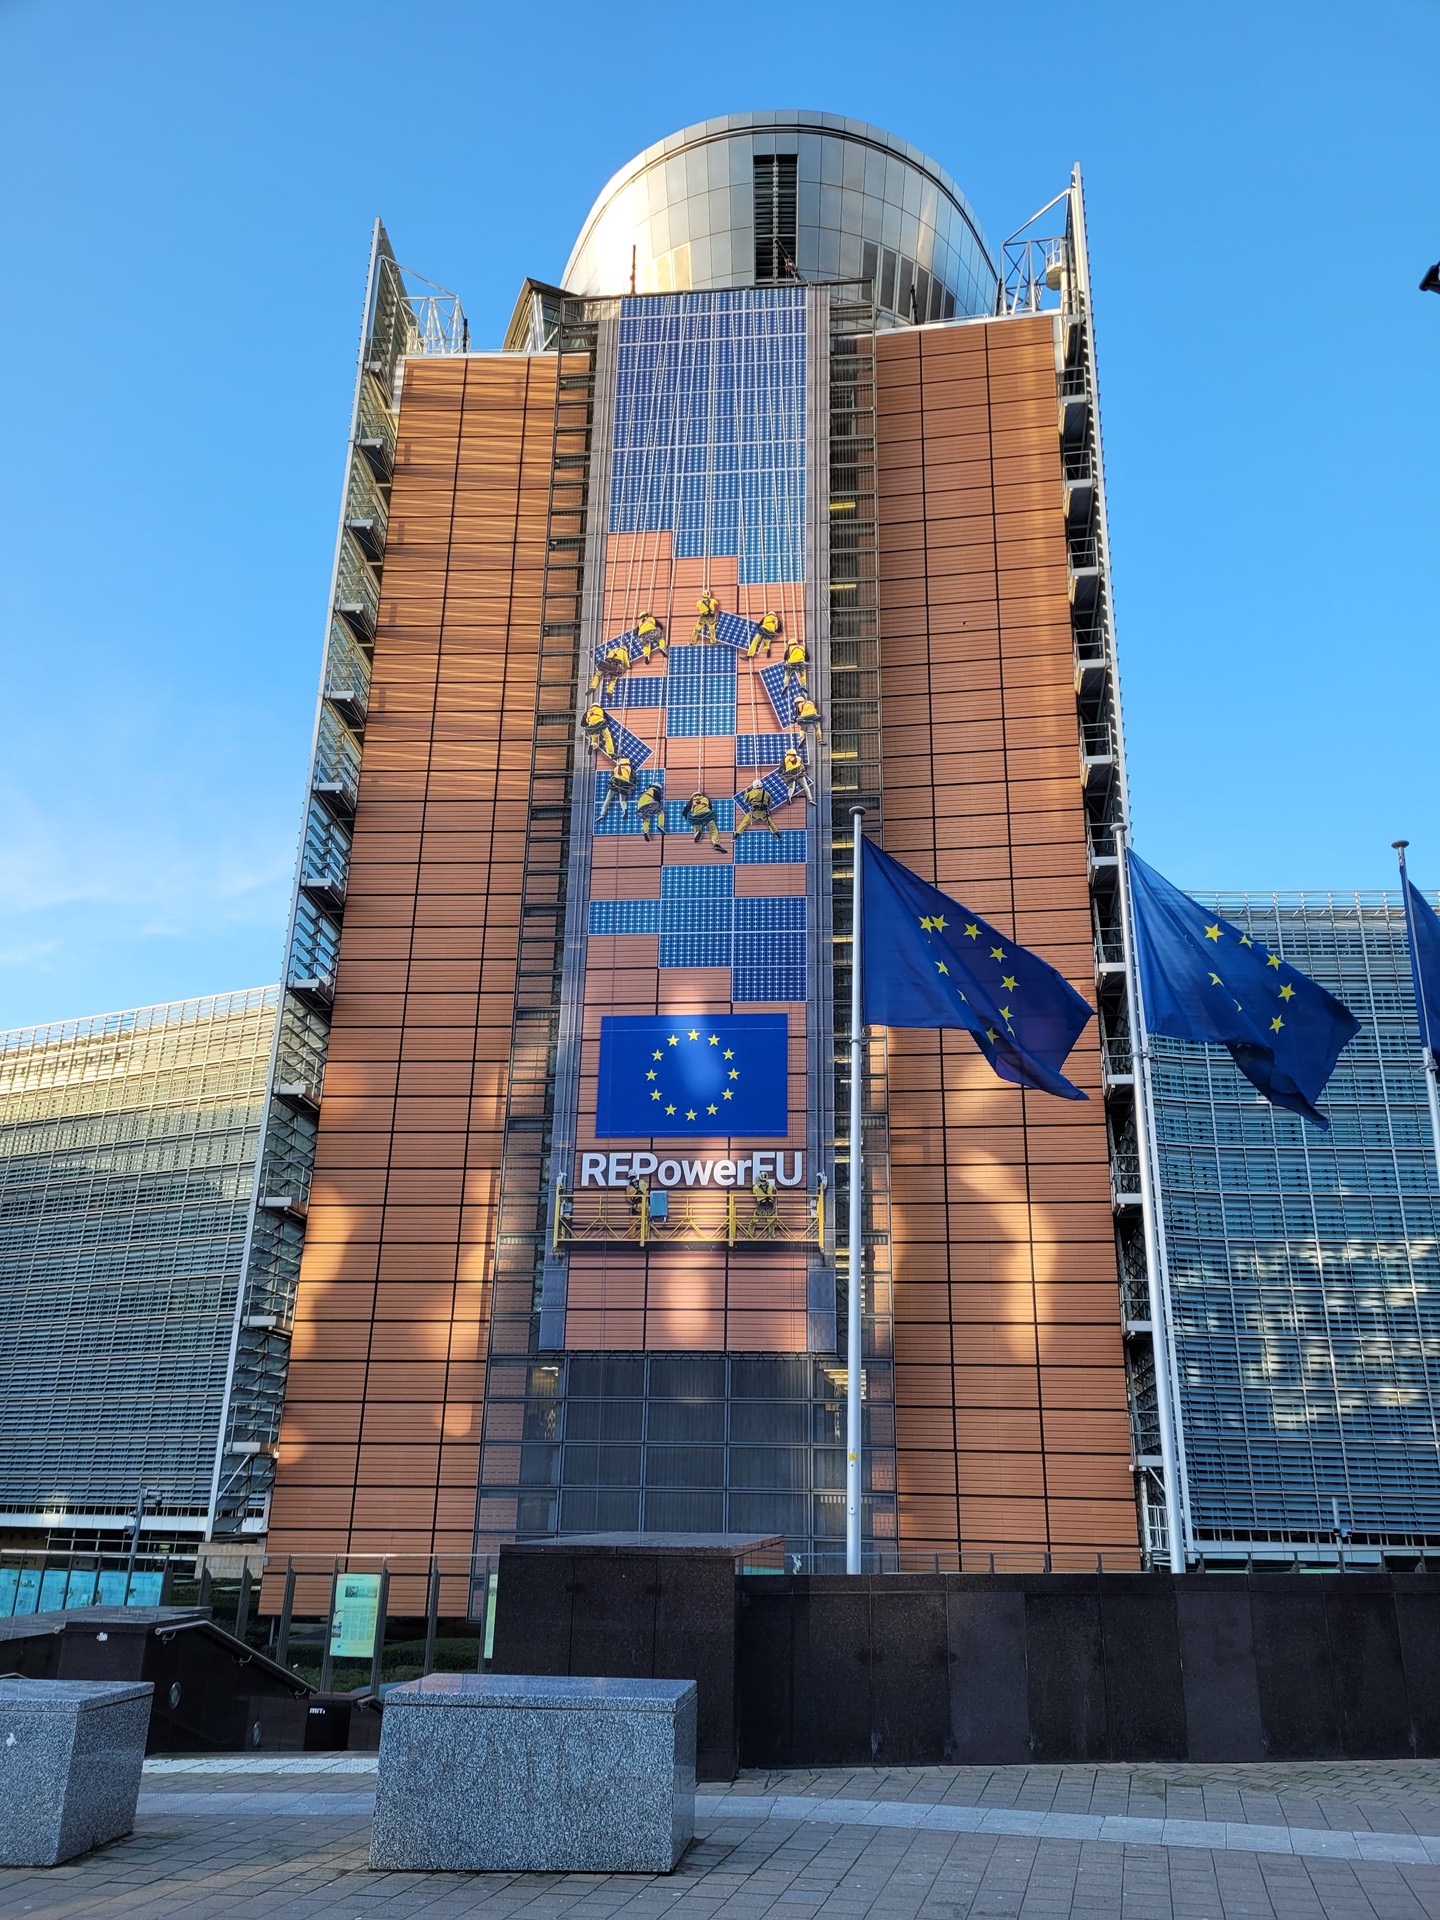 Turm des EU-Parlaments mit dem Sternenkreis im Zentrum, darunter die EU-Flagge und die Aufschrift "REPowerEU". Vor dem Gebäude stehen drei EU-Flaggen. 